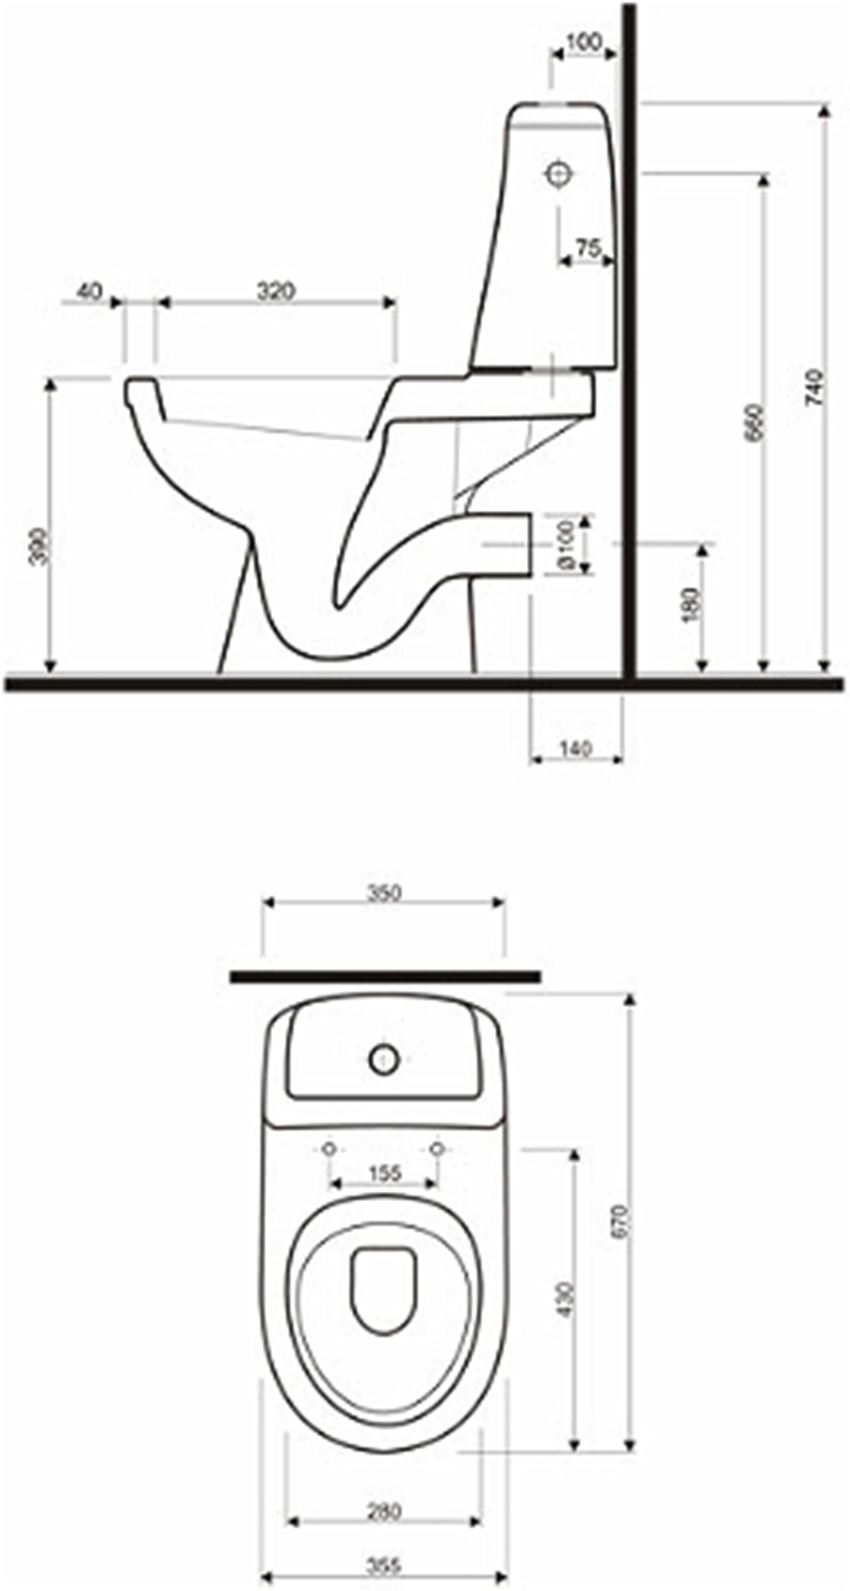 Zestaw WC kompakt odpływ poziomy Koło Solo rysunek techniczny